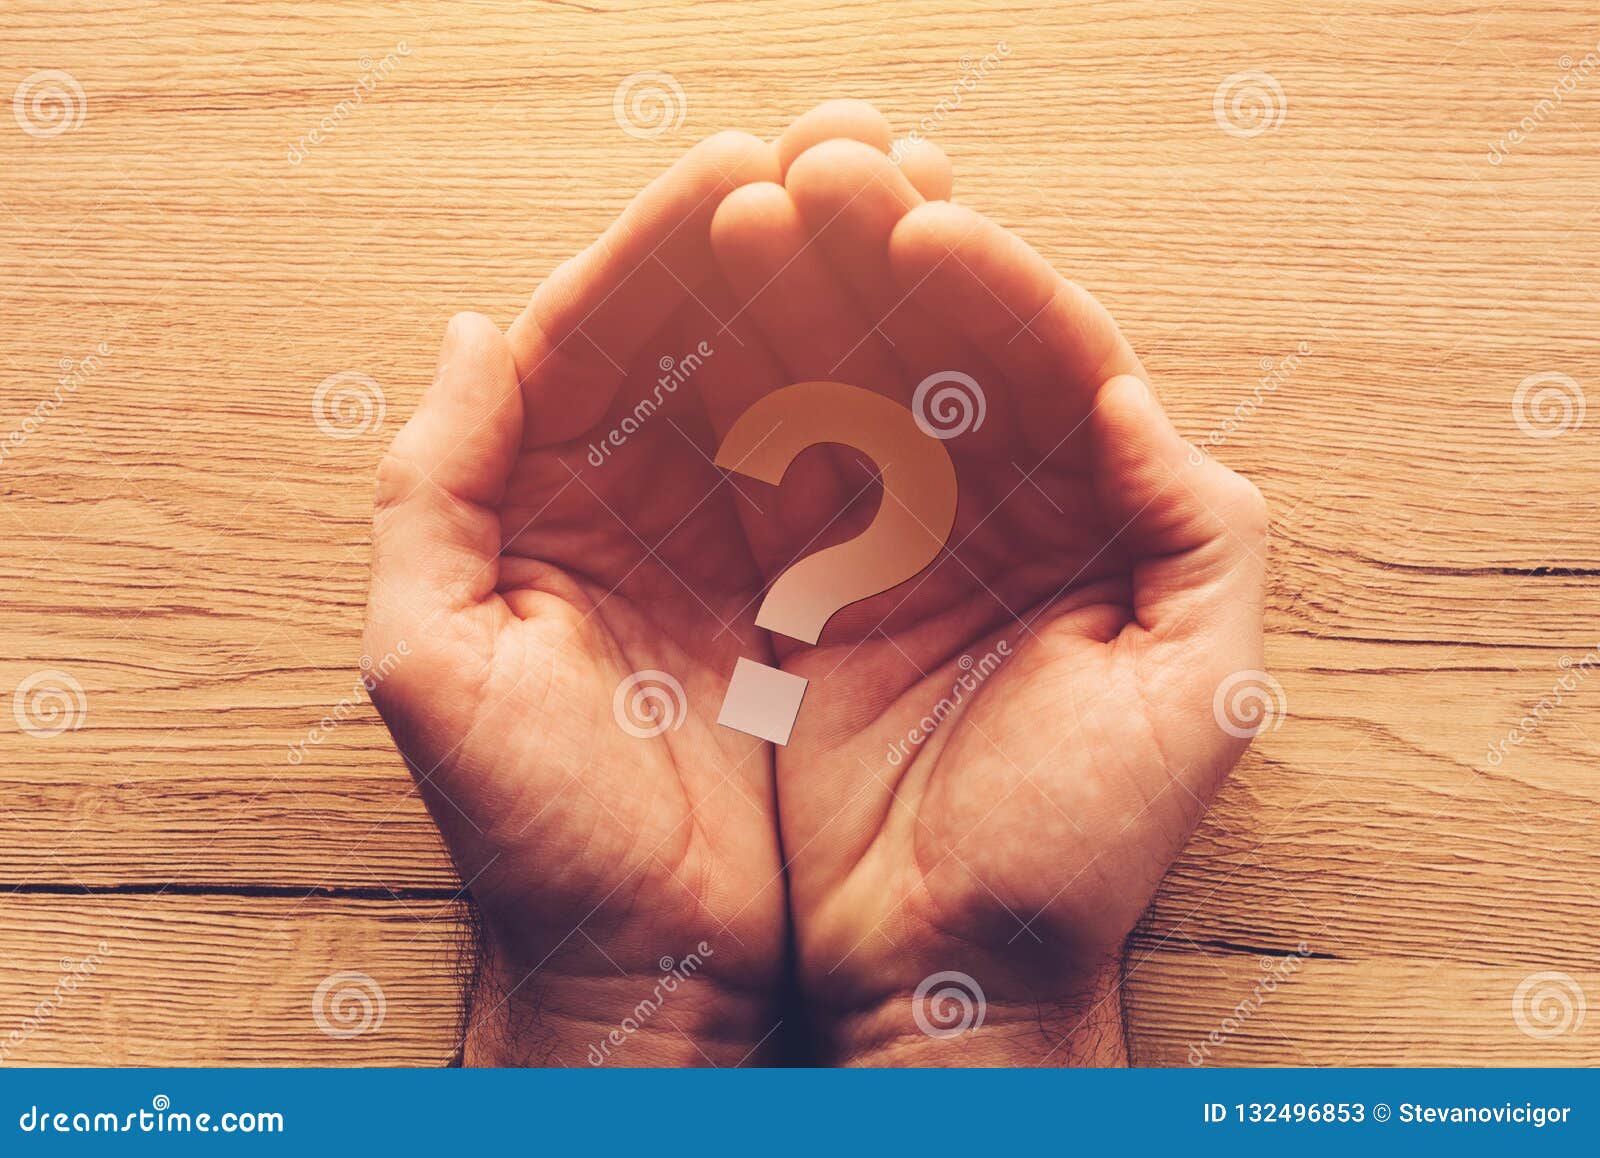 Знак на руке вопрос. Знак вопроса в руках. Вопросительный знак на ладони. Рука вопрос. Рука в виде знака вопроса.